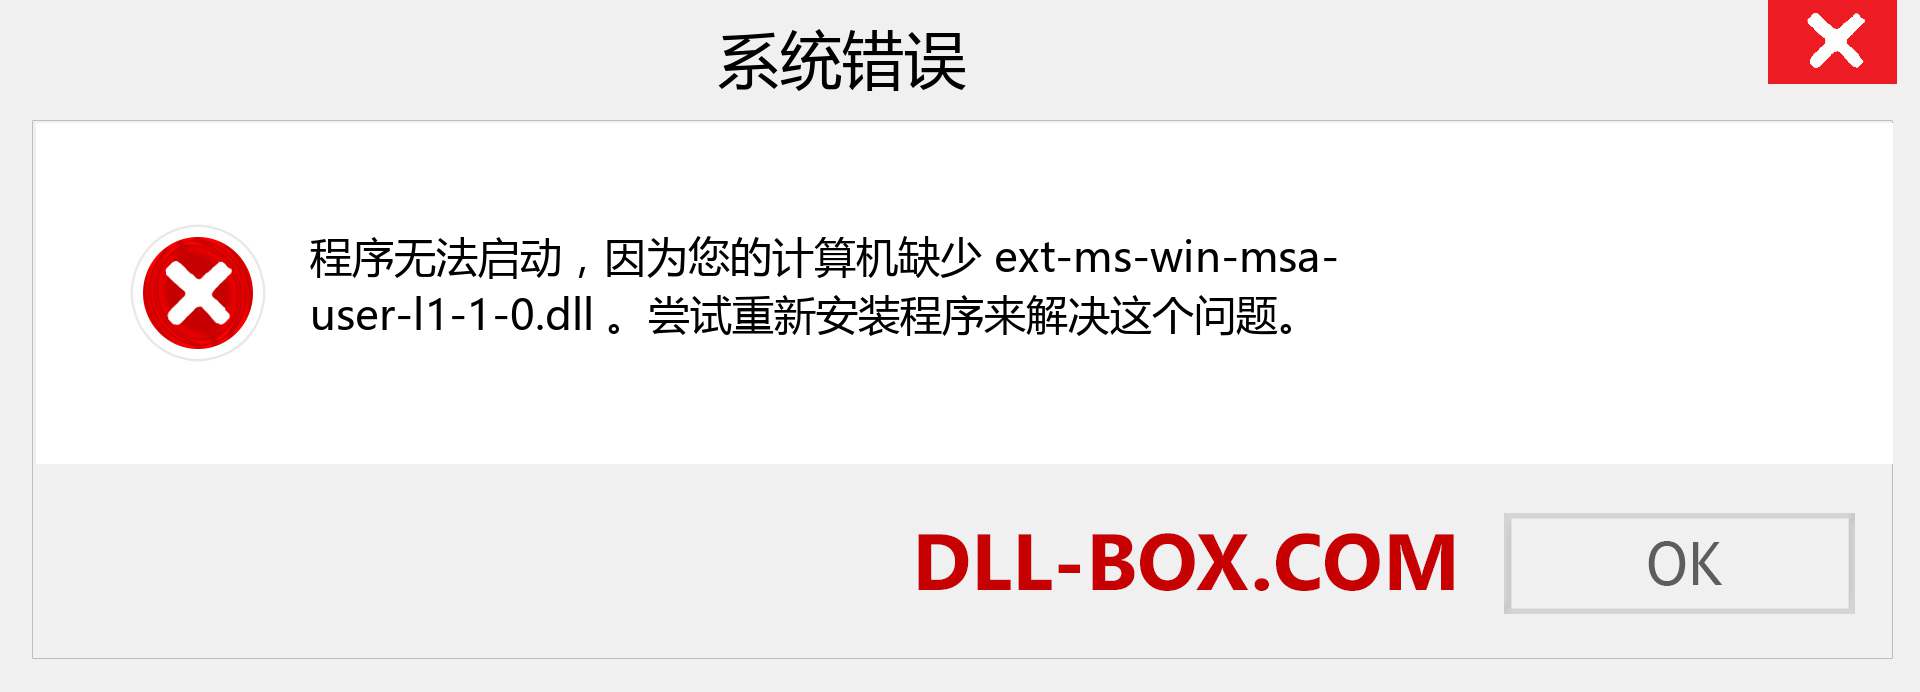 ext-ms-win-msa-user-l1-1-0.dll 文件丢失？。 适用于 Windows 7、8、10 的下载 - 修复 Windows、照片、图像上的 ext-ms-win-msa-user-l1-1-0 dll 丢失错误